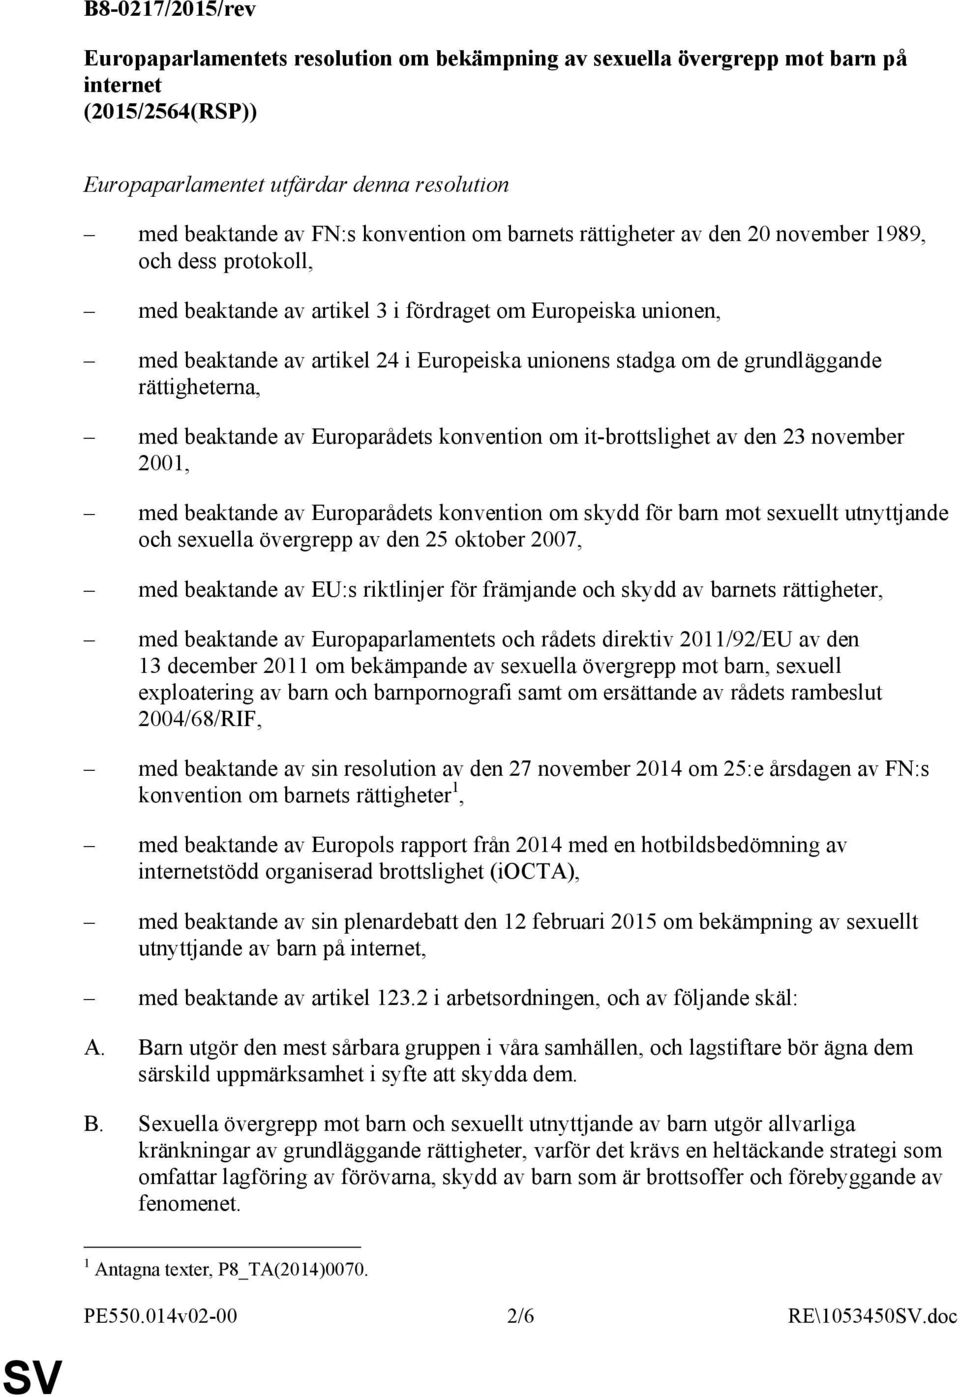 grundläggande rättigheterna, med beaktande av Europarådets konvention om it-brottslighet av den 23 november 2001, med beaktande av Europarådets konvention om skydd för barn mot sexuellt utnyttjande